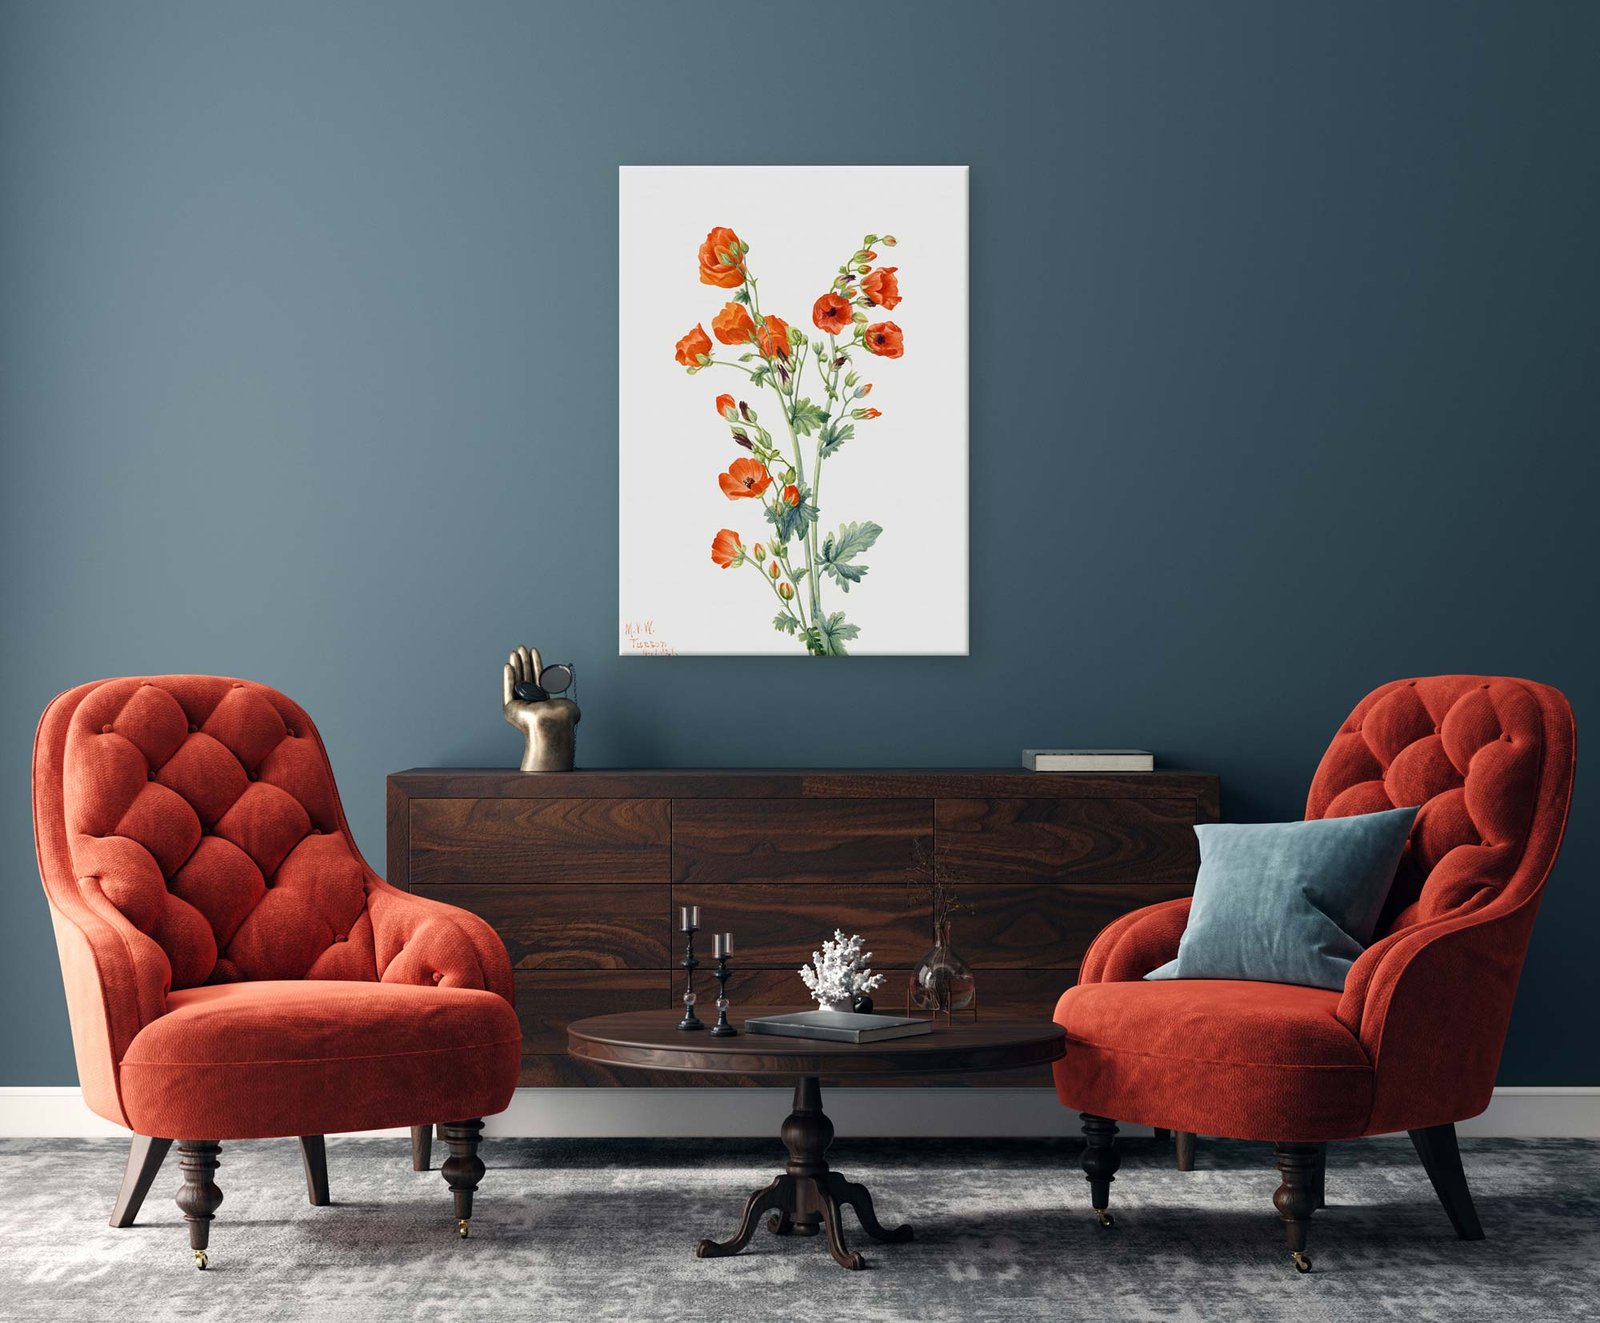 186 stilingi paveikslai svetaineje - Raudonasis dedešvinis - Mary Vaux Walcott